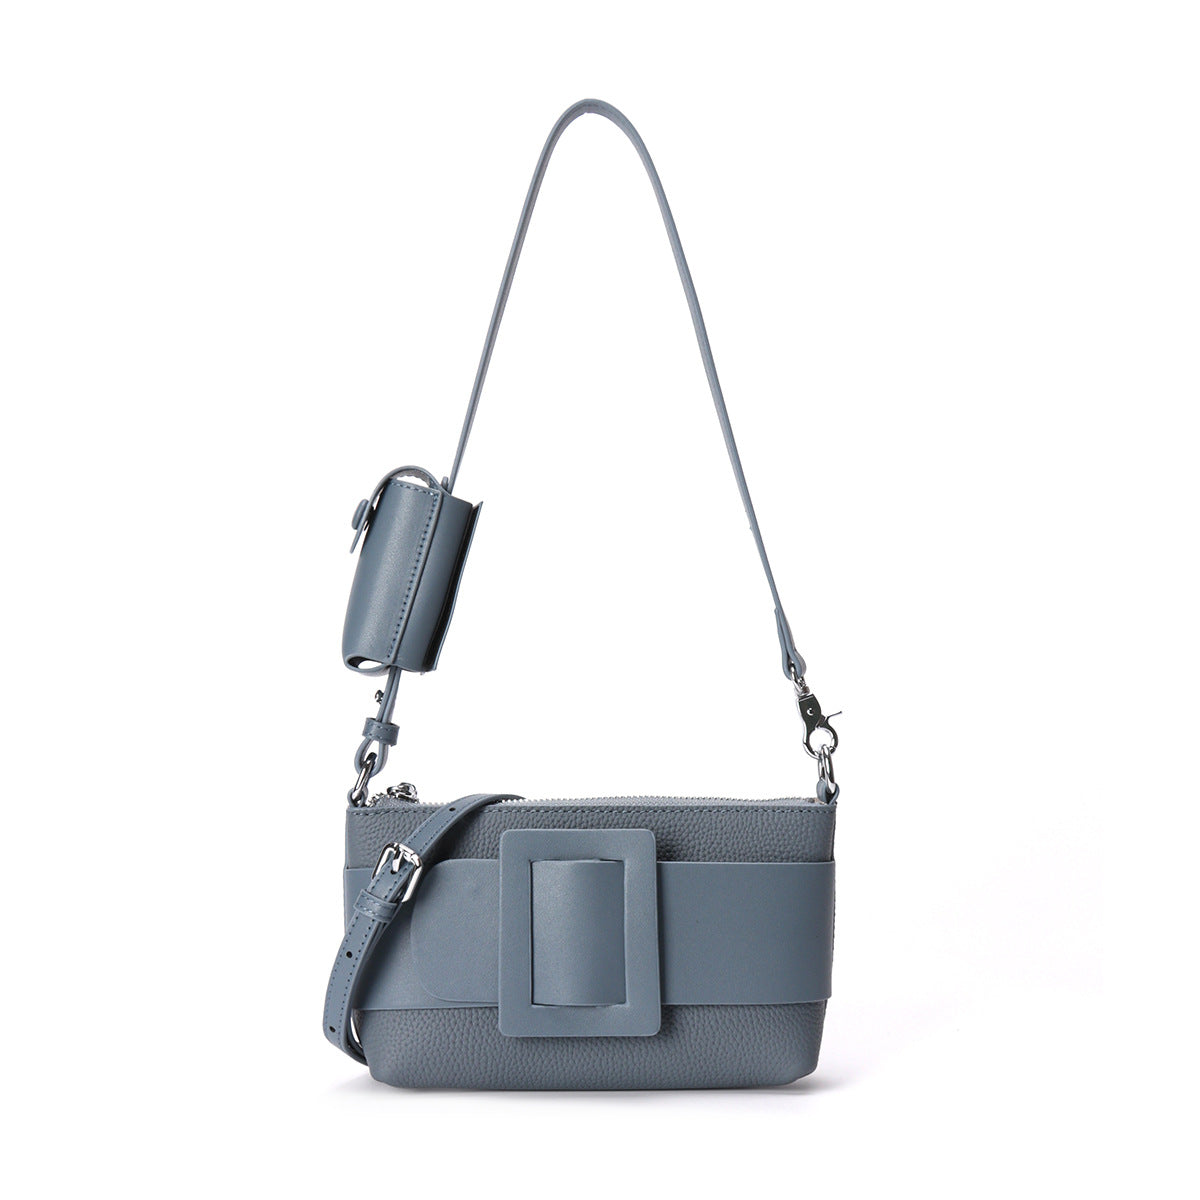 Underarm Leather Women's Portable Messenger Bag